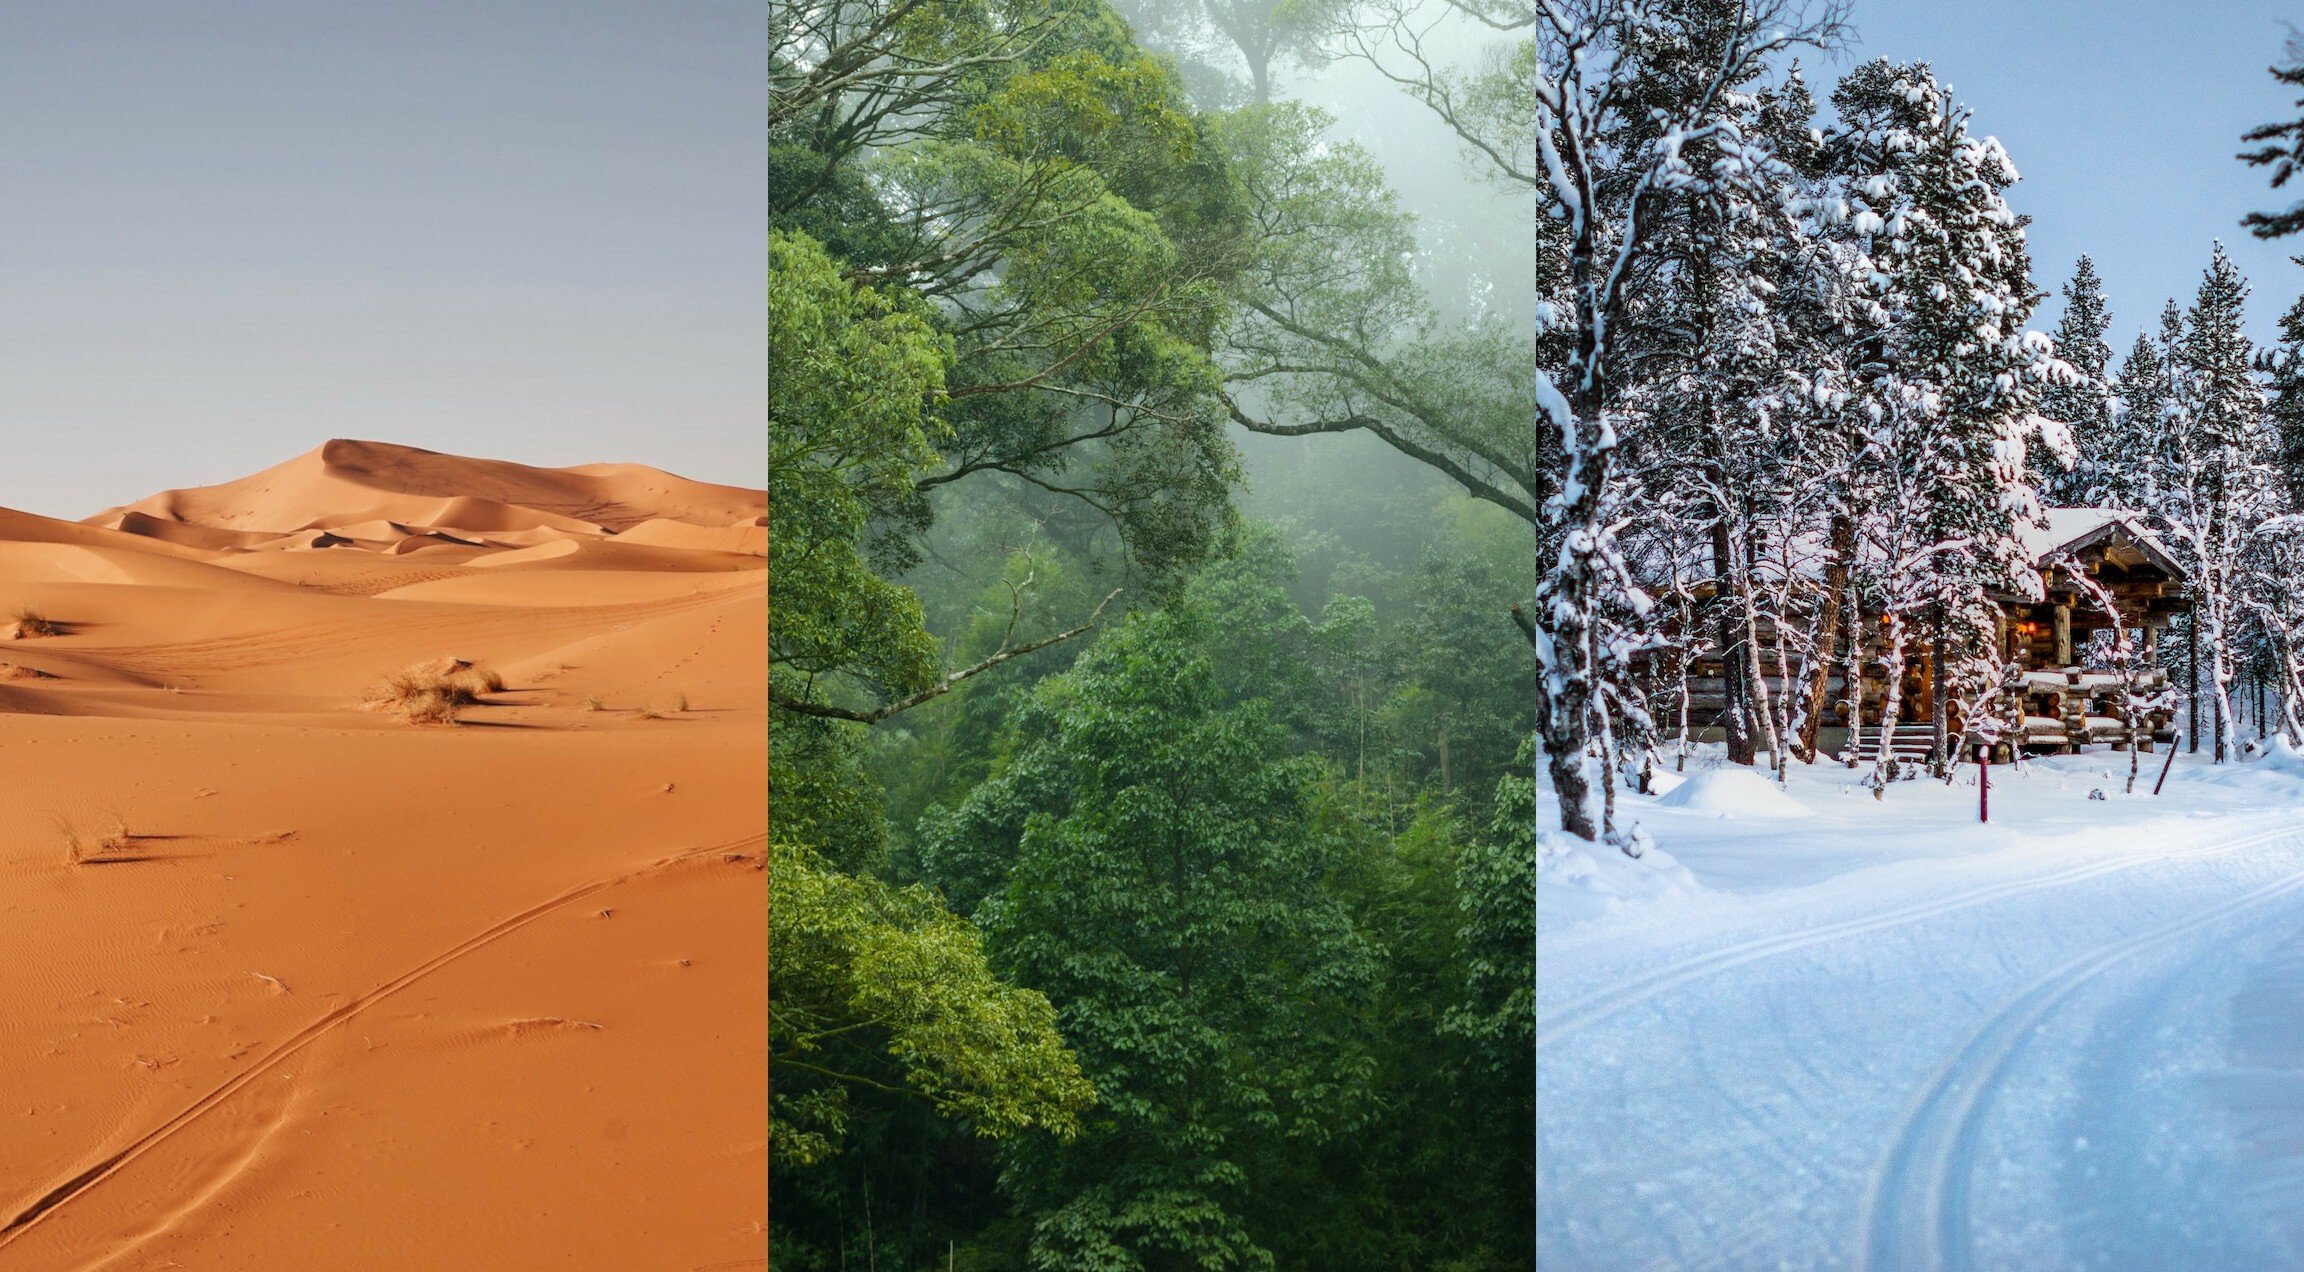 Tres ejemplos de clima diferentes: árido o desértico, tropical húmero y polar ártico.